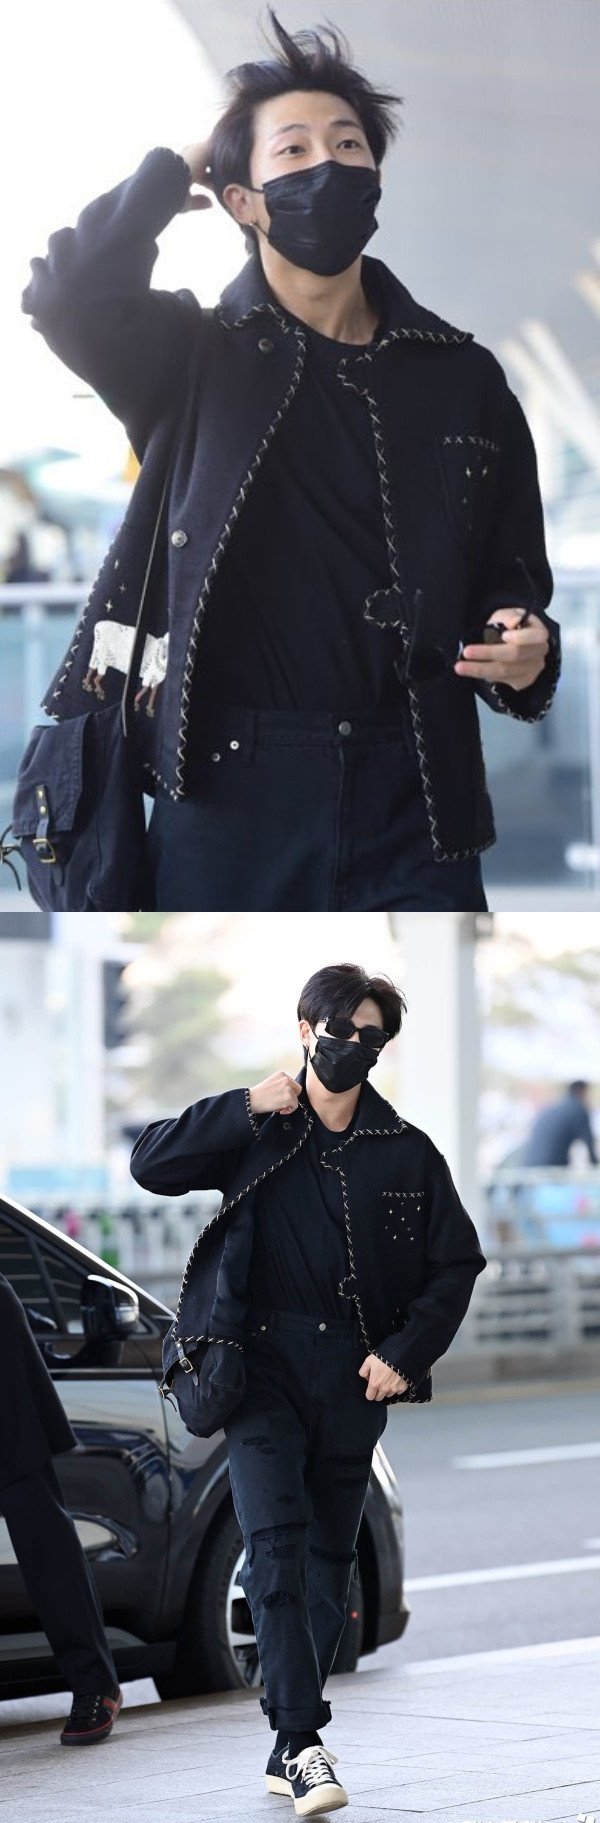 RM из BTS благополучно прибыл в Нью-Йорк 